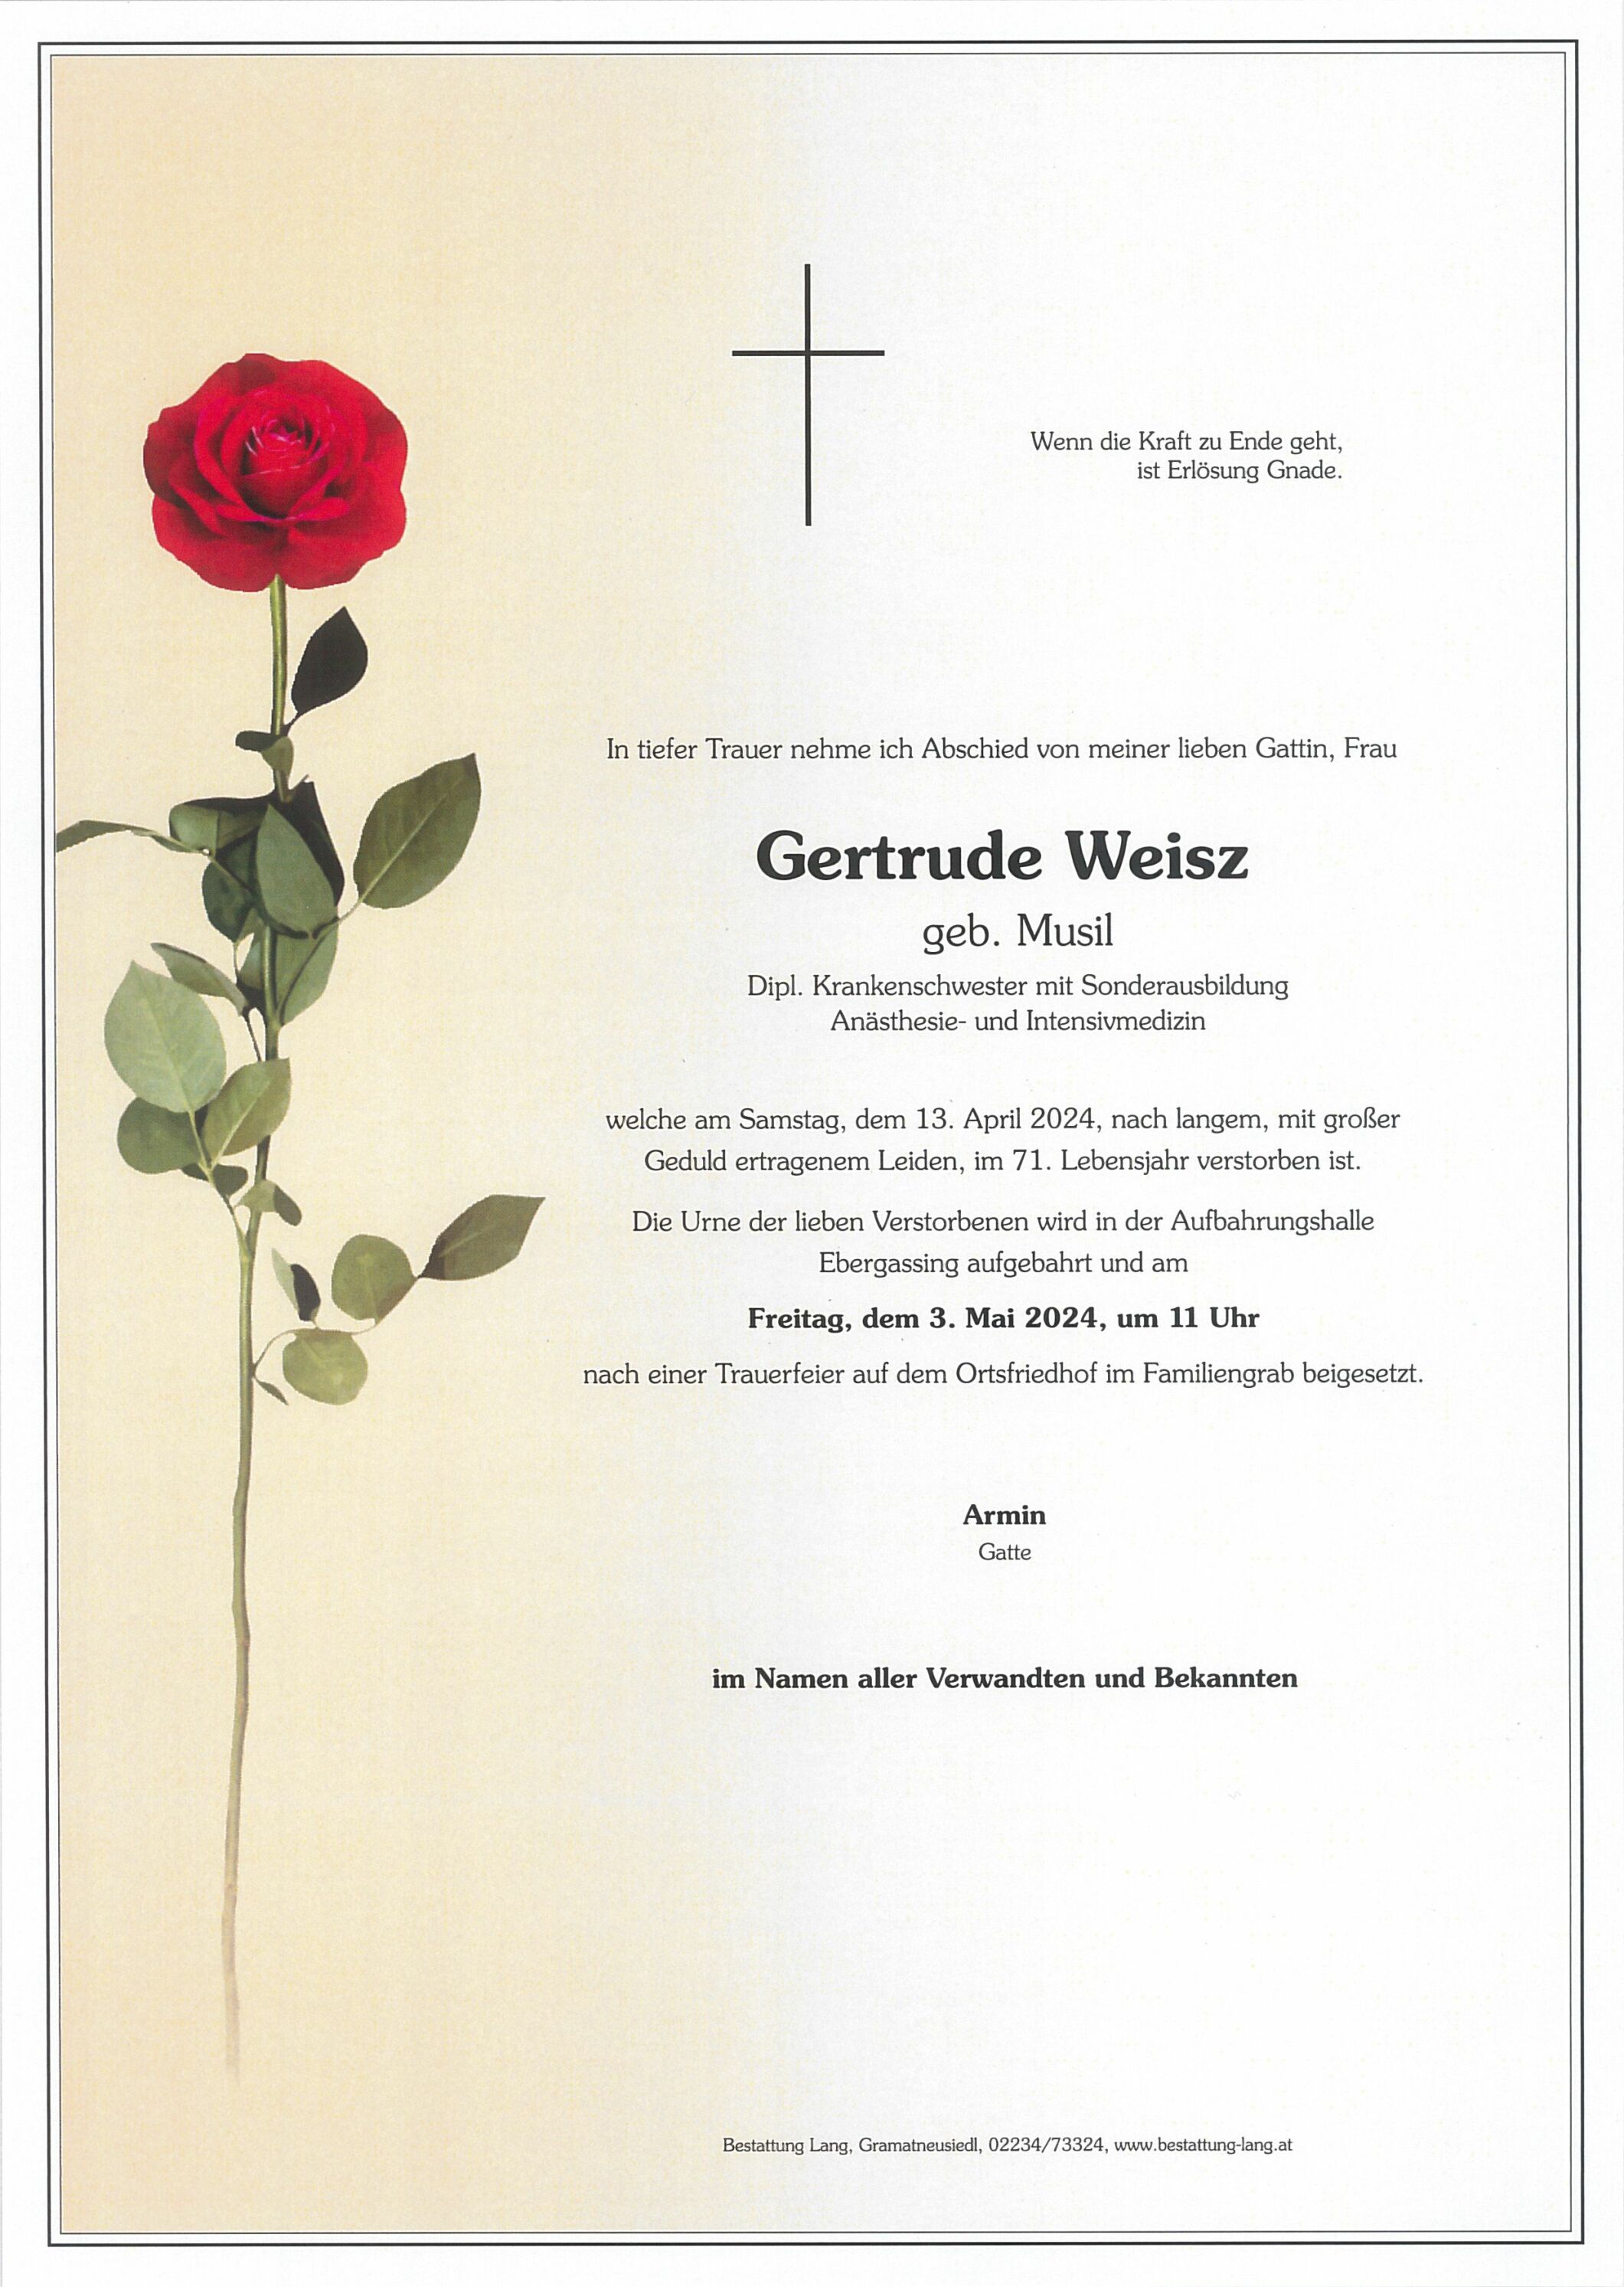 Gertrude Weisz